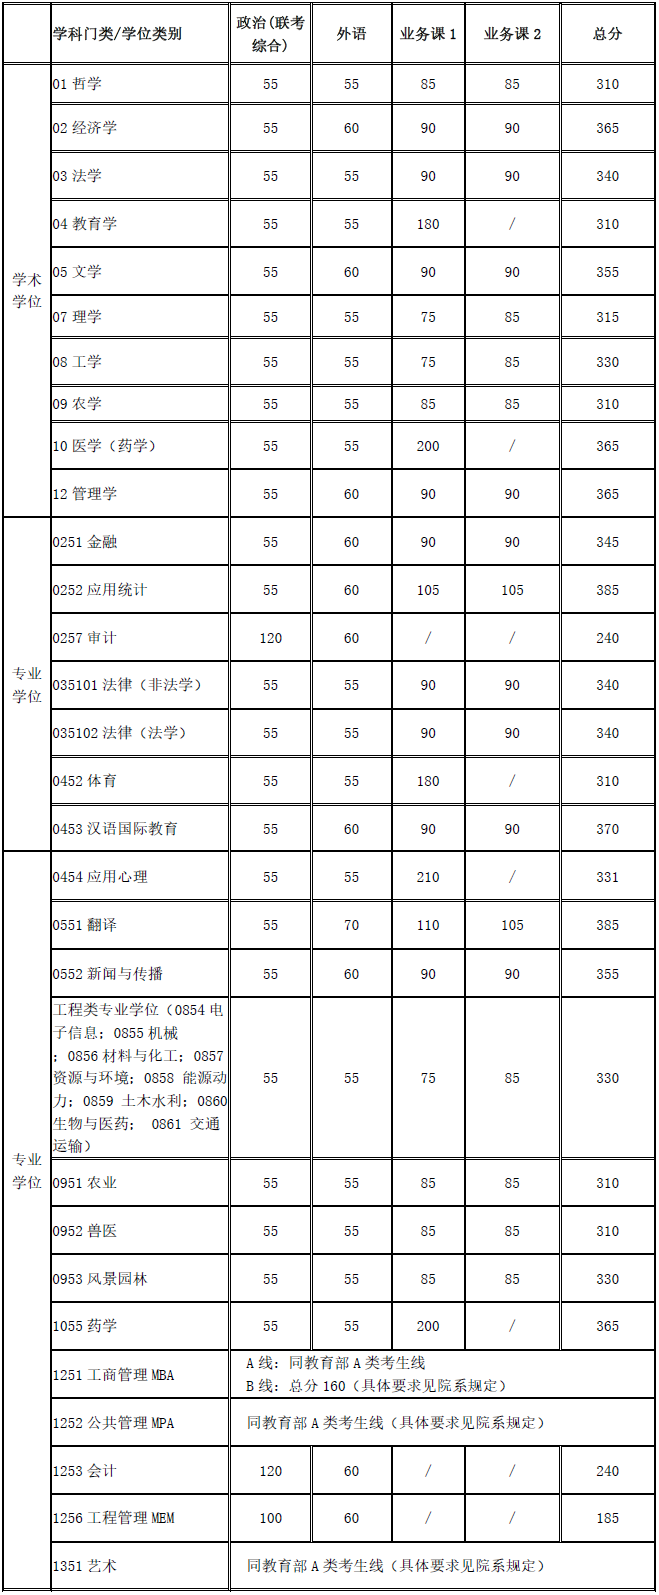 上海交通大学2020考研复试分数线已公布-查字典新闻网1